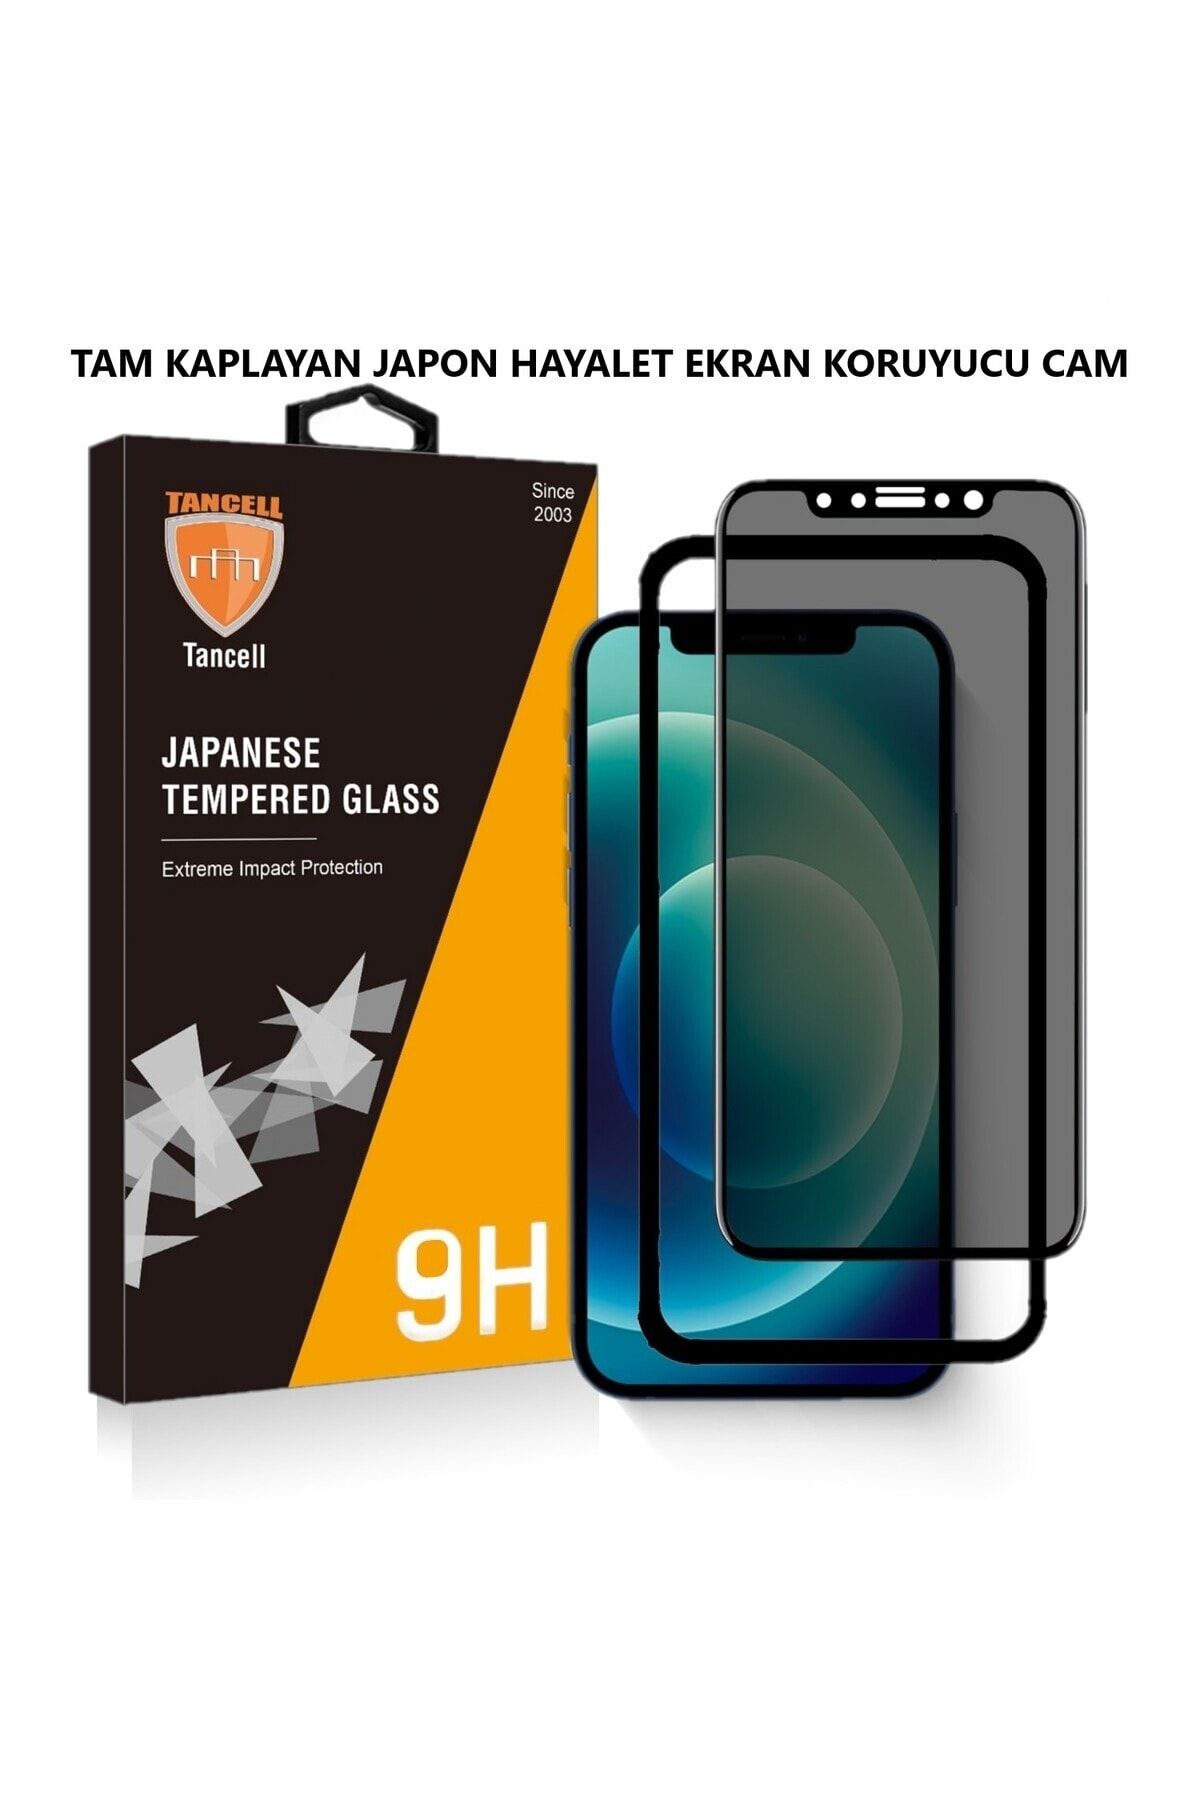 TANCELL İphone 13/ 13 Pro Uyumlu Hayalet Ekran Koruyucu Tam Kaplayan Japon Kırılmaz Cam 6,1 Inc (1 ADET)